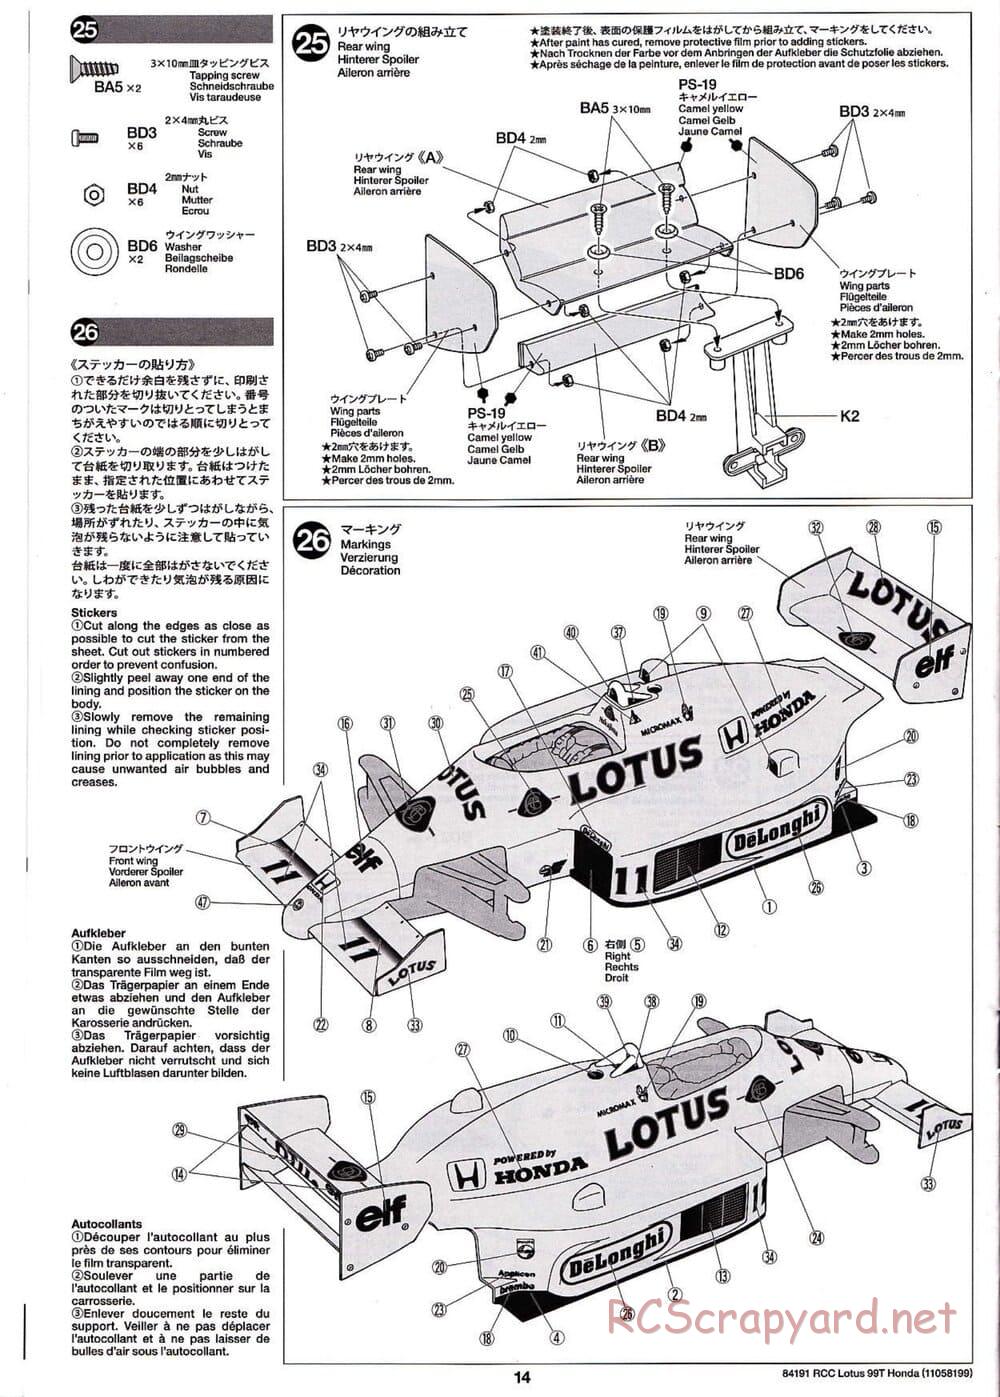 Tamiya - Team Lotus 99T Honda - F103 Chassis - Manual - Page 14